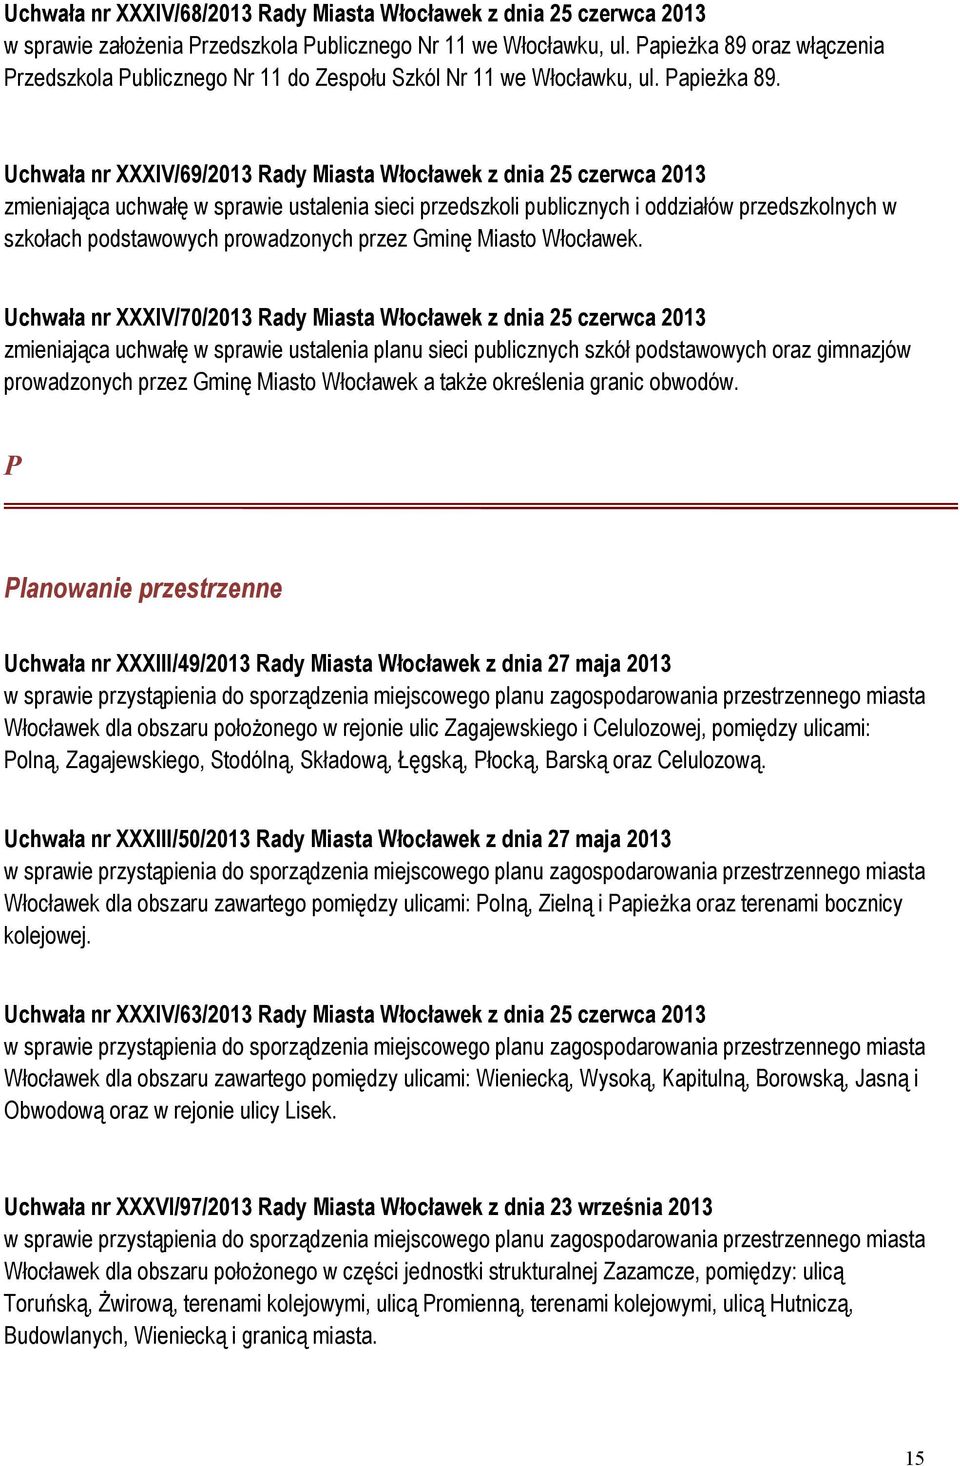 Uchwała nr XXXIV/69/2013 Rady Miasta Włocławek z dnia 25 czerwca 2013 zmieniająca uchwałę w sprawie ustalenia sieci przedszkoli publicznych i oddziałów przedszkolnych w szkołach podstawowych